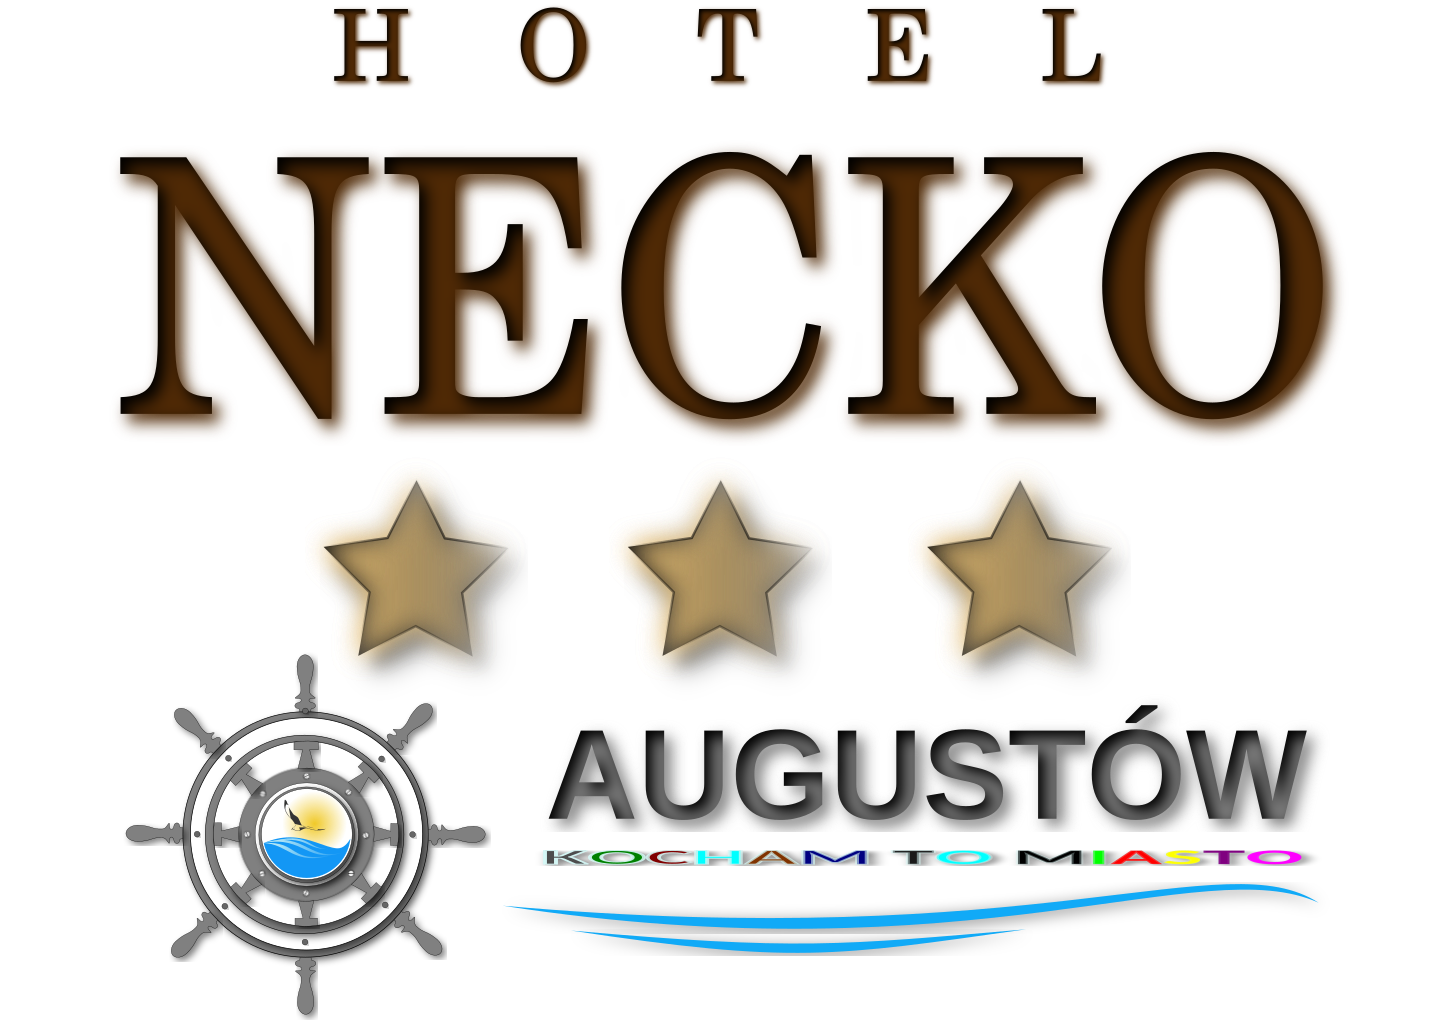 Hotel NECKO Augustów